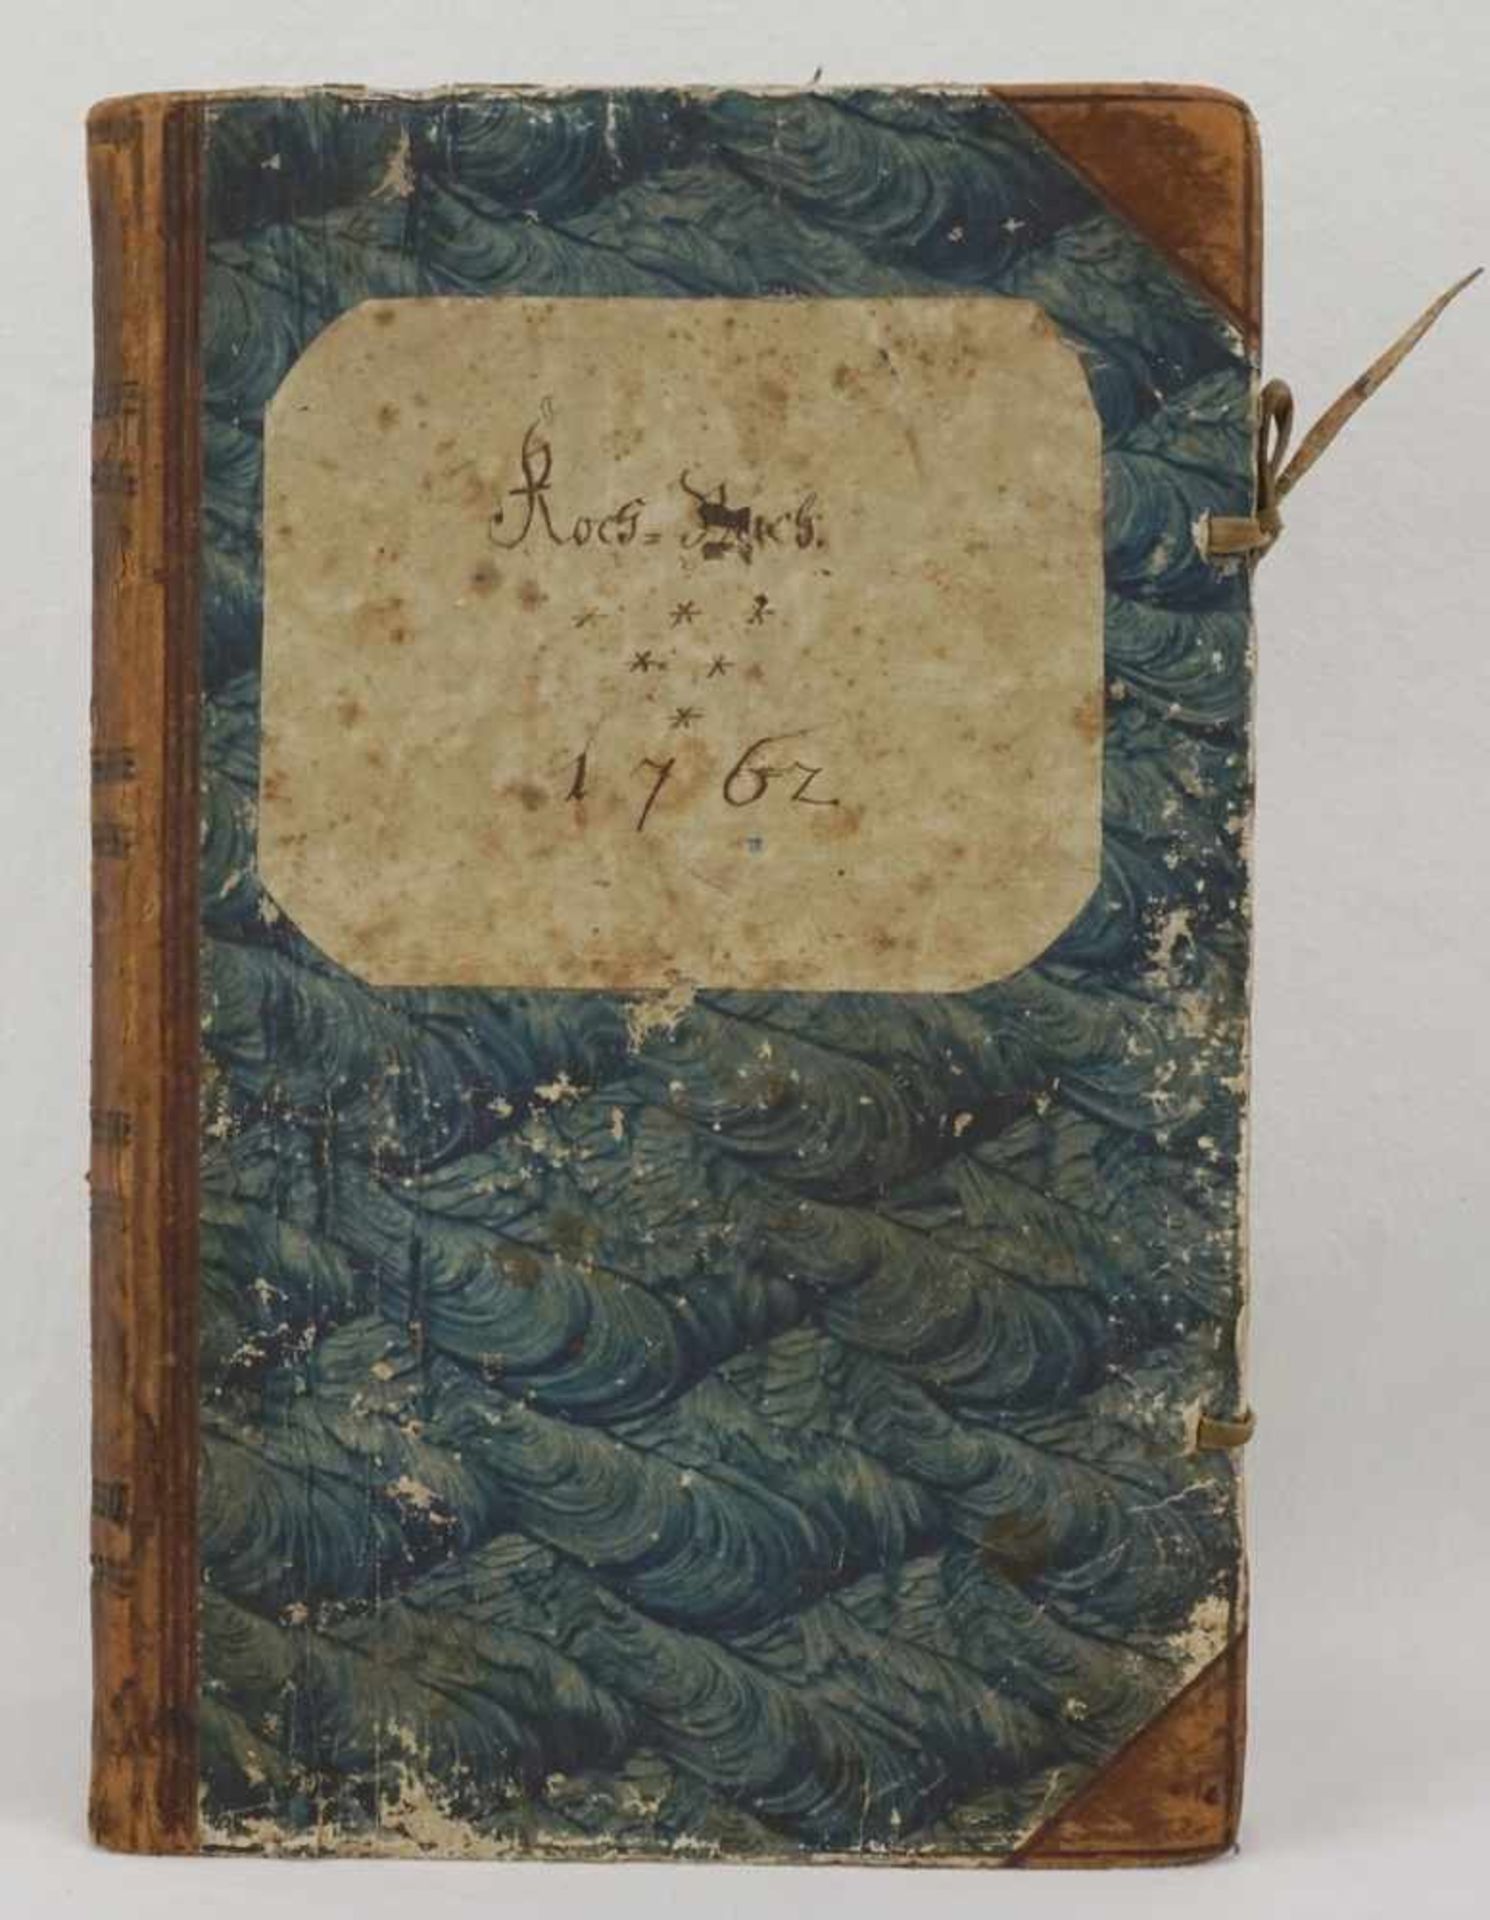 Handgeschriebenes Kochbuch1762, Pappeinband mit handgemachtem Marmorpapier, Lederrücken und Ecken,